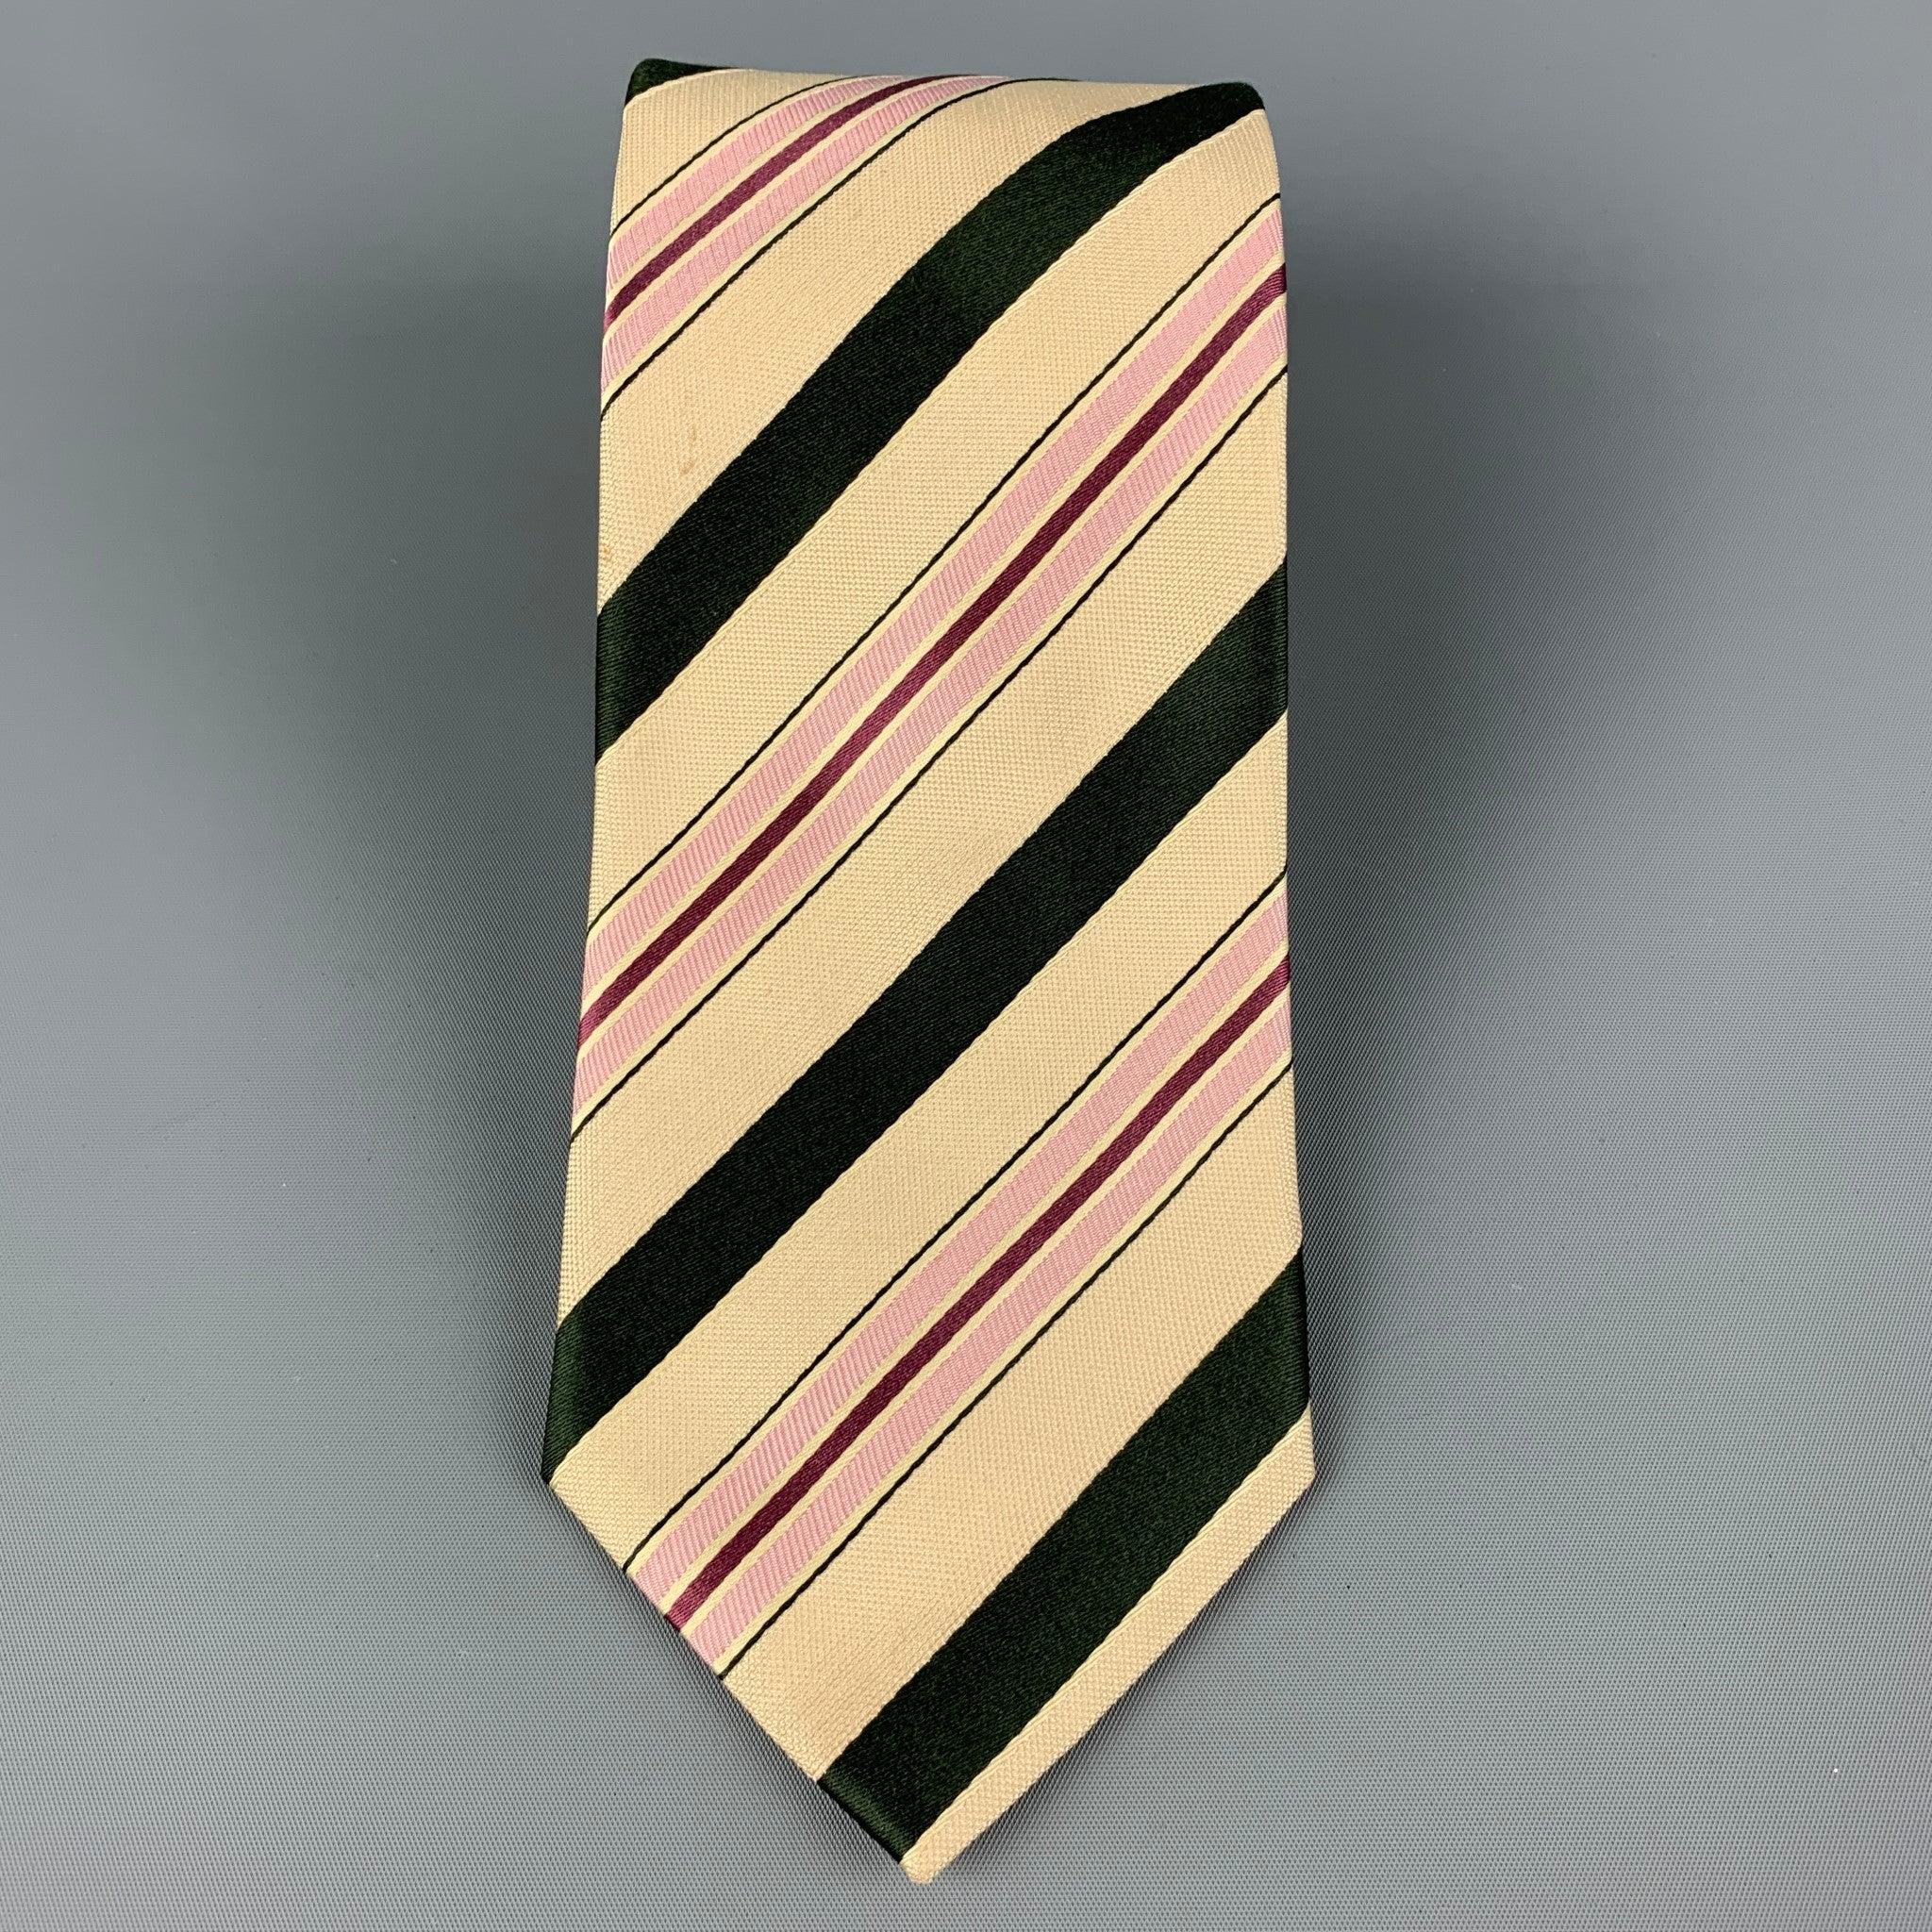 ERMENEGILDO ZEGNA für WILKES BASHFORD Krawatte aus beiger und schwarzer Seide mit diagonalem Streifendruck. Hergestellt in Italien. Guter Pre-Owned Zustand. Geringfügige Mängel. Wie es ist. Breite: 3,75 Zoll Länge: 60 Zoll 
  
  
 
Sui